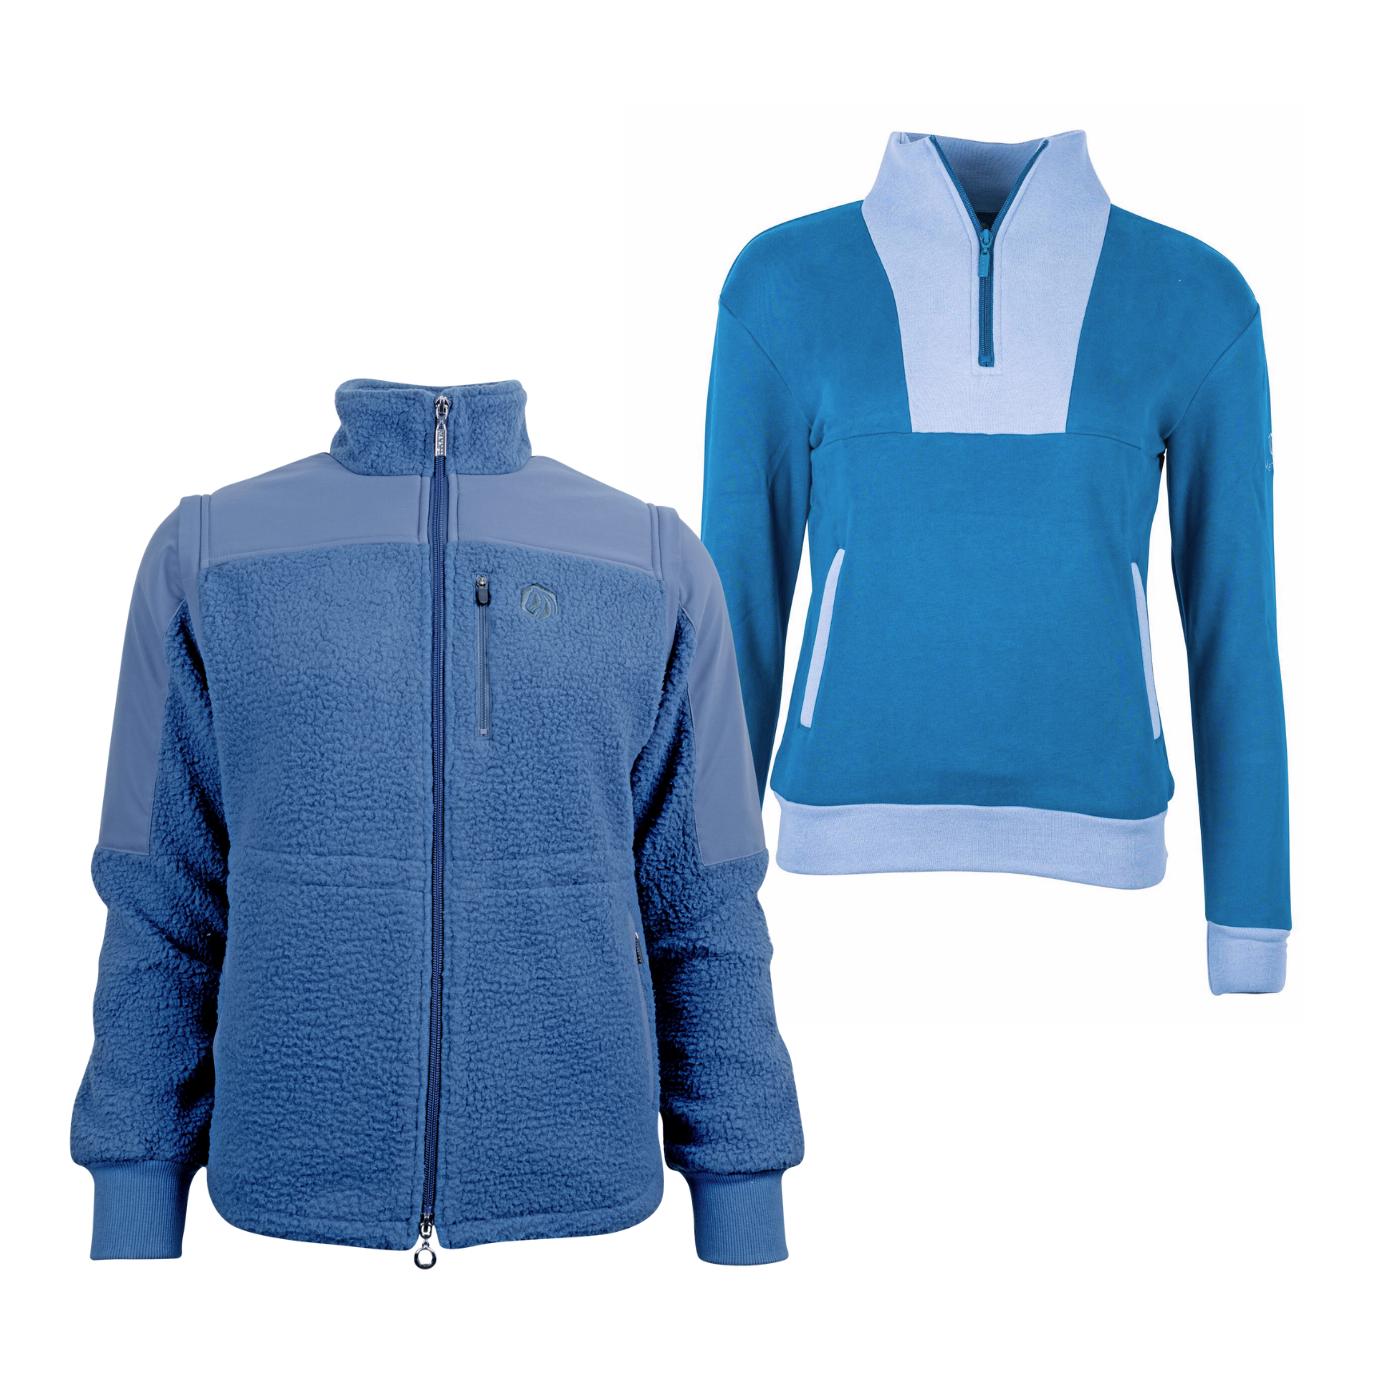 Marengo Outfit-Set Cosy Rides - Teddyfleece-Jacke & Zip Sweatshirt Farbe: Calm Blue / Ocean Blue, Grösse Pullover: XL, Grösse Jacke: XL von Marengo